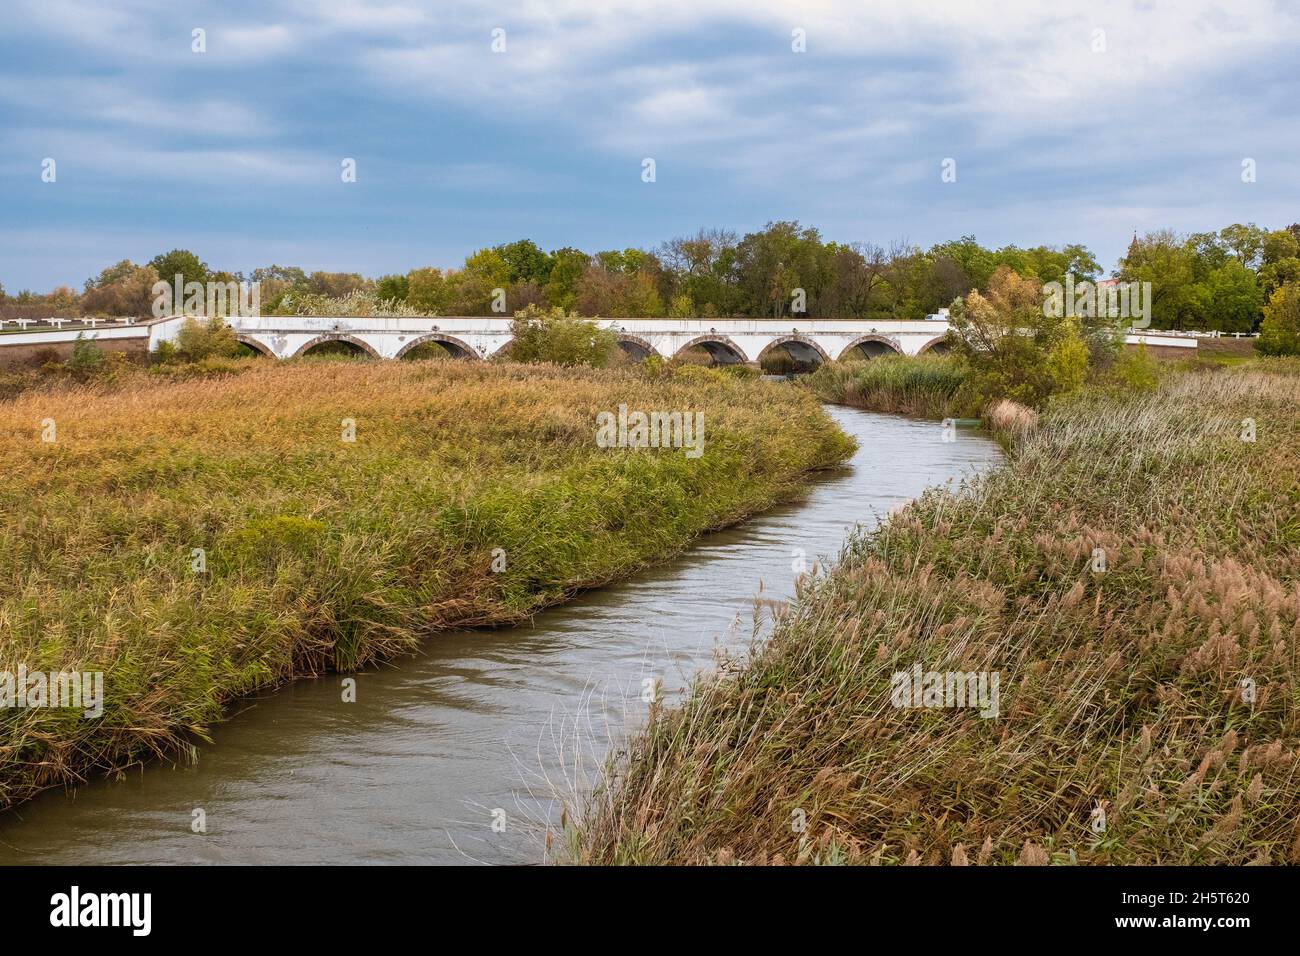 The nine-holed bridge, Hortobagy National Park, Hungary Stock Photo